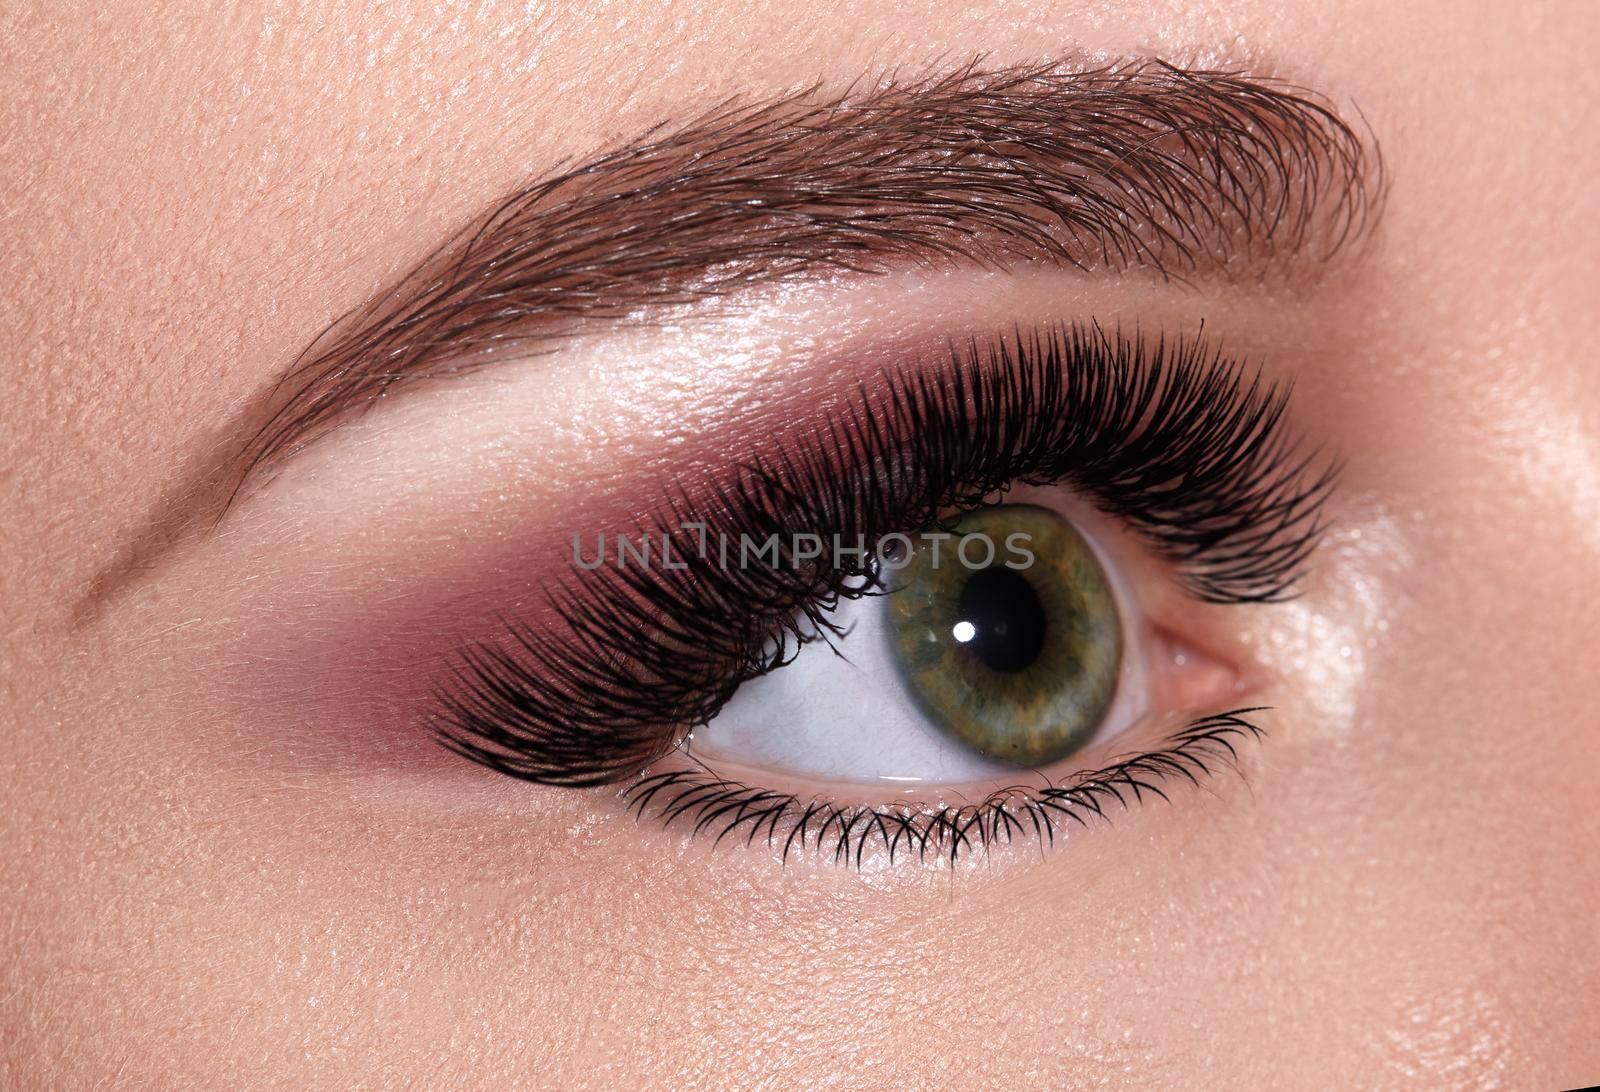 Beautiful Macro Female Eye with Extreme Long Eyelashes and Celebrate Evening Makeup. Perfect Shape Brow, Fashion Lashes by MarinaFrost